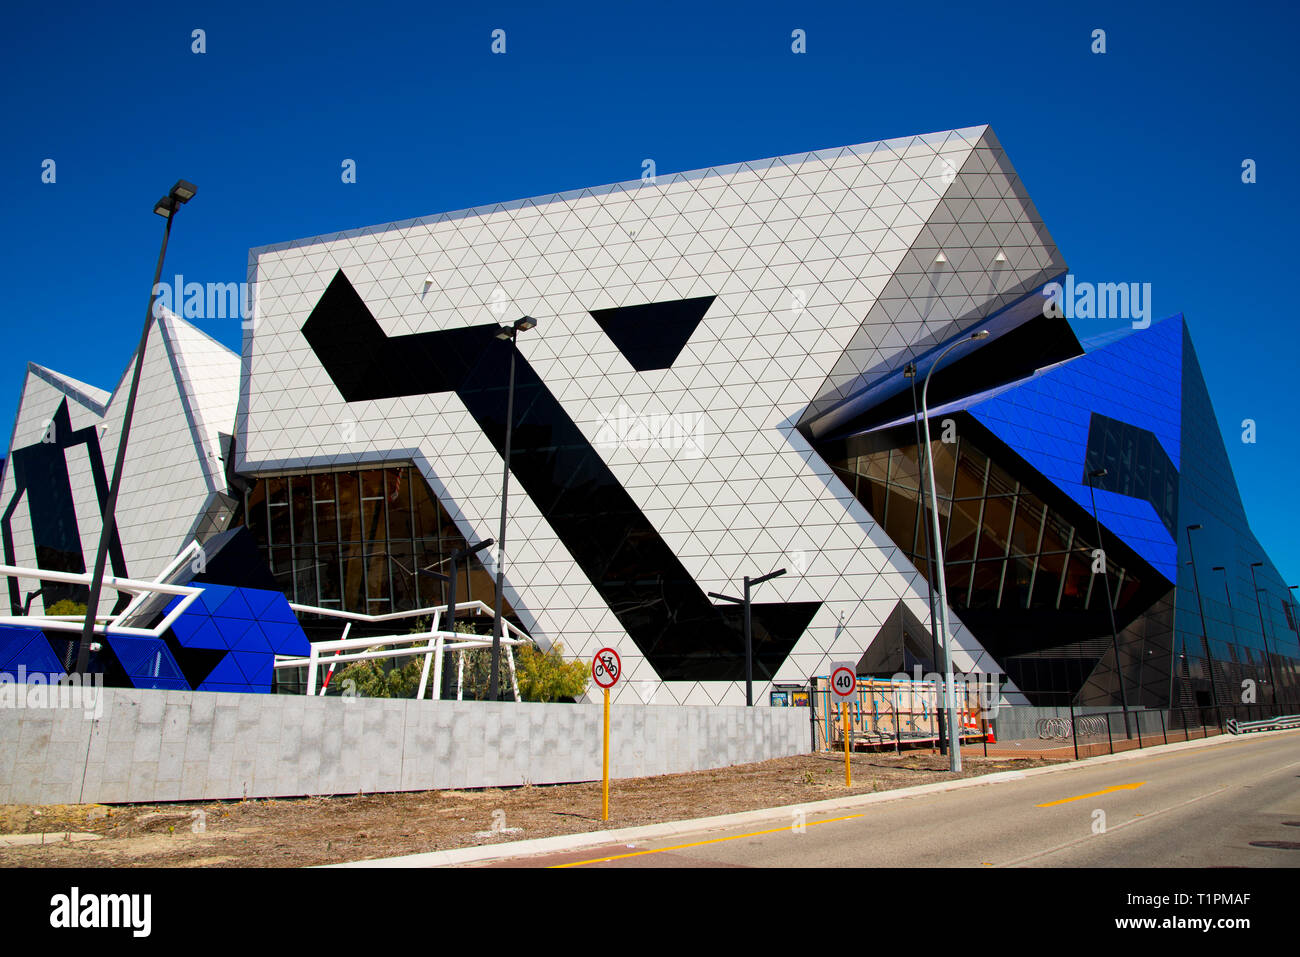 PERTH, Australien - 2. März, 2019: RAC-Arena ist ein Unterhaltungs- und sporting Arena wurde im Jahr 2012 erbaut und wurde von Architekturbüros Ashton Raggat konzipiert Stockfoto